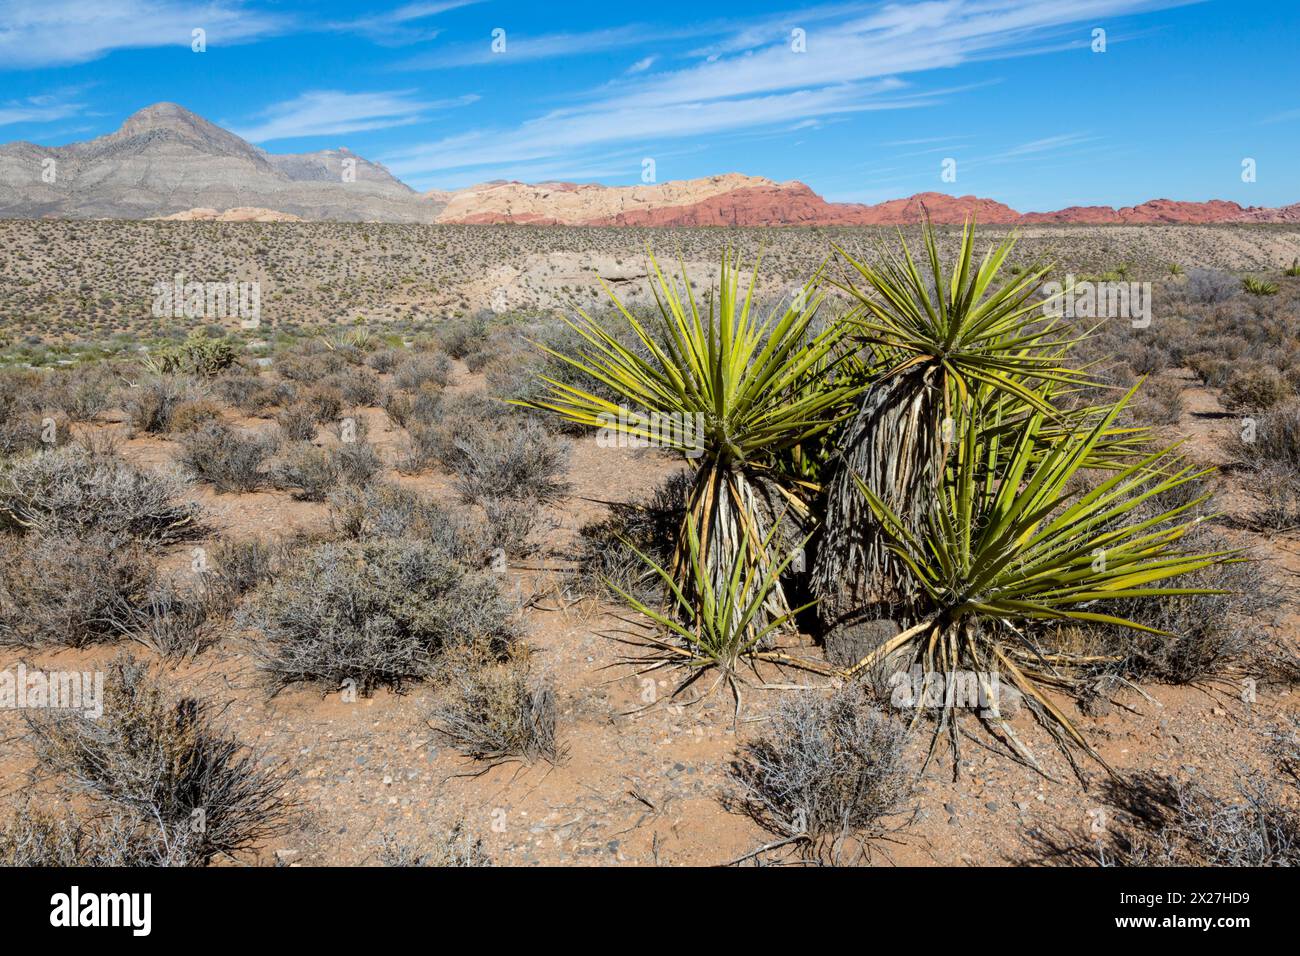 Red Rock Canyon, Nevada. Mojave Yucca (Yucca Schidigera). Poussée Keystone en arrière-plan, montrant Turtlehead Peak. Calico Hills sur la droite. Banque D'Images